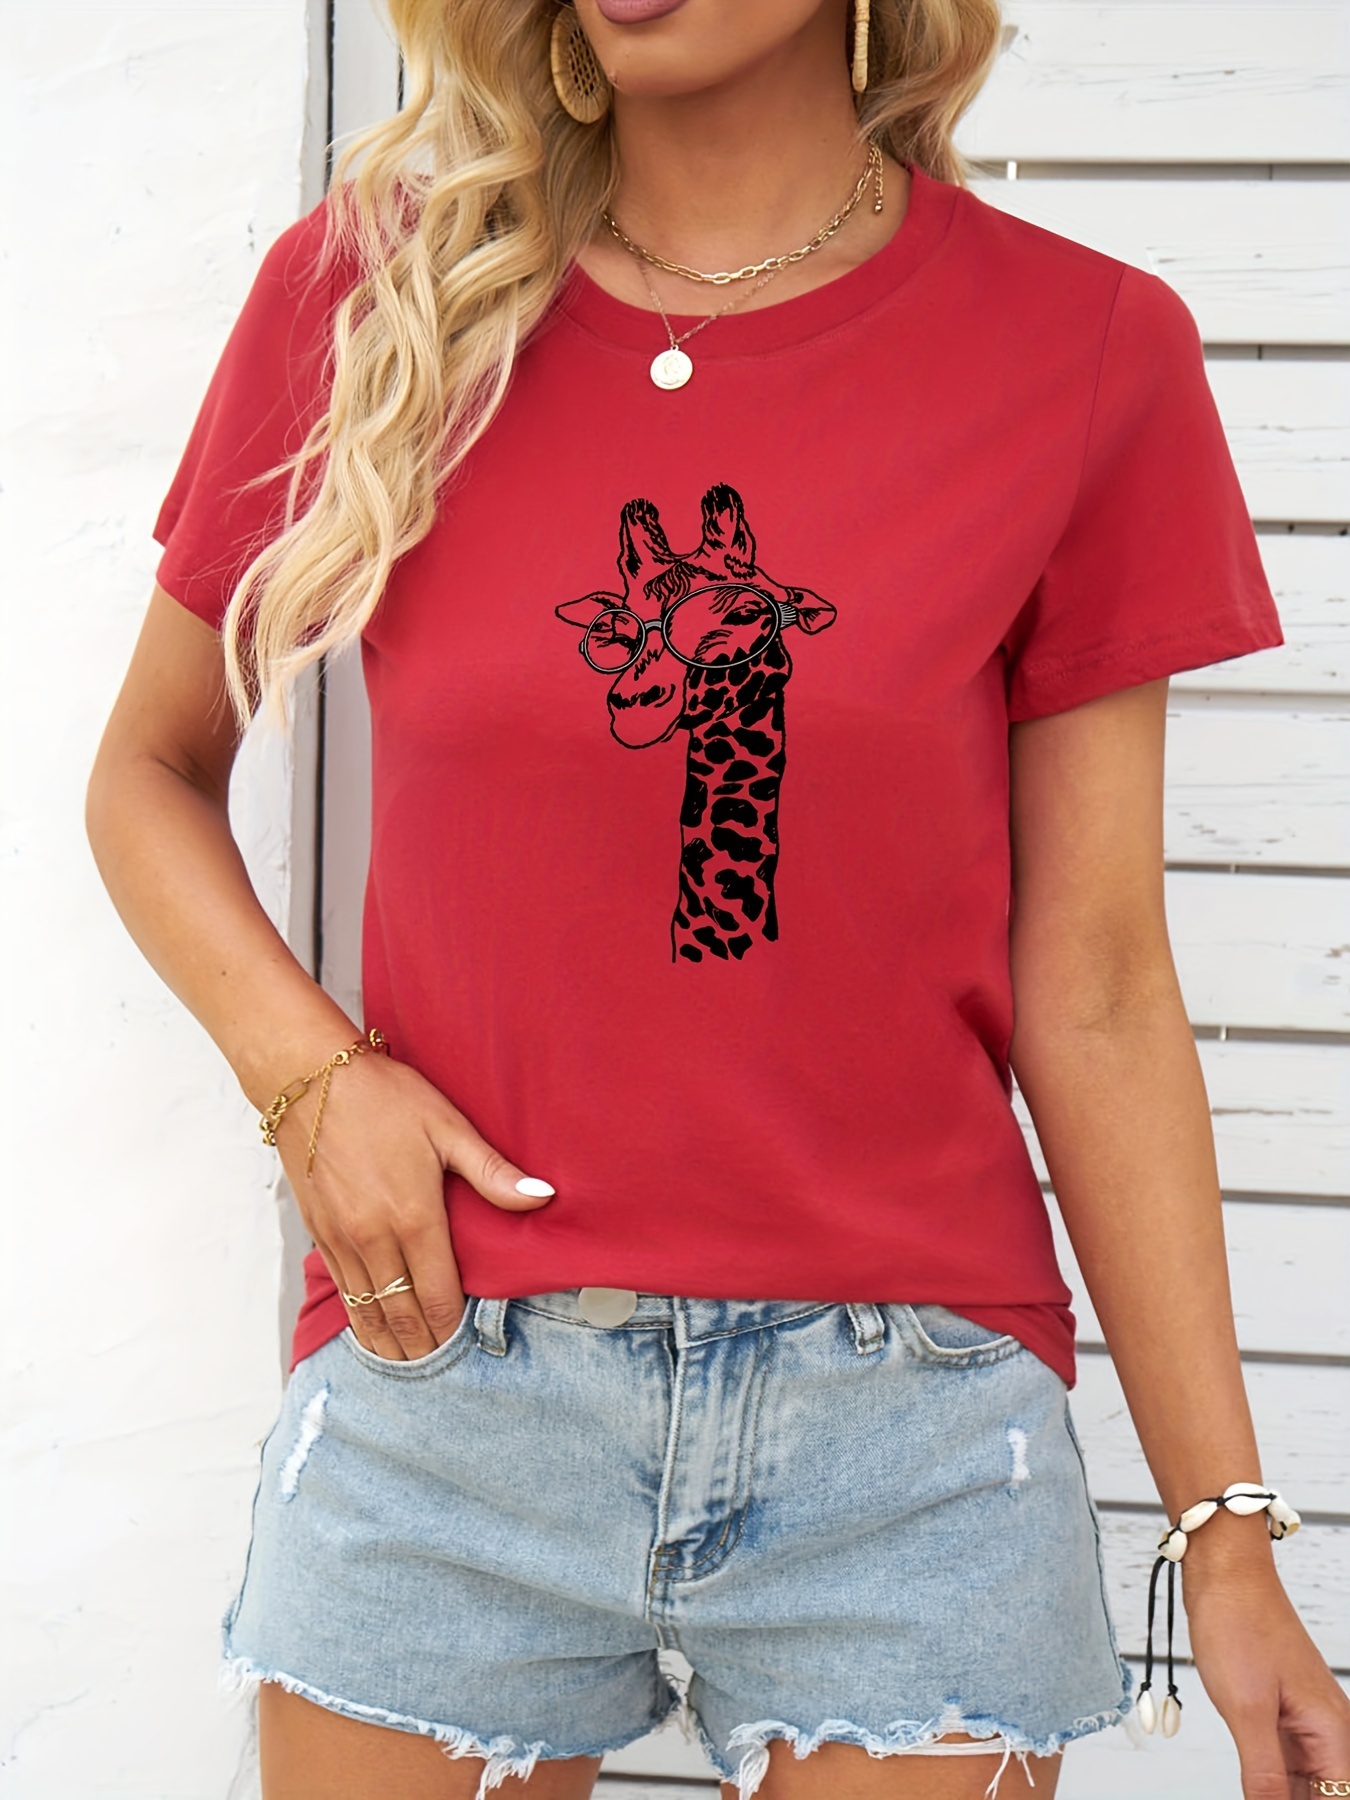 Cartoon Giraffe Print Crew Neck T-shirt, Casual Short Sleeve T